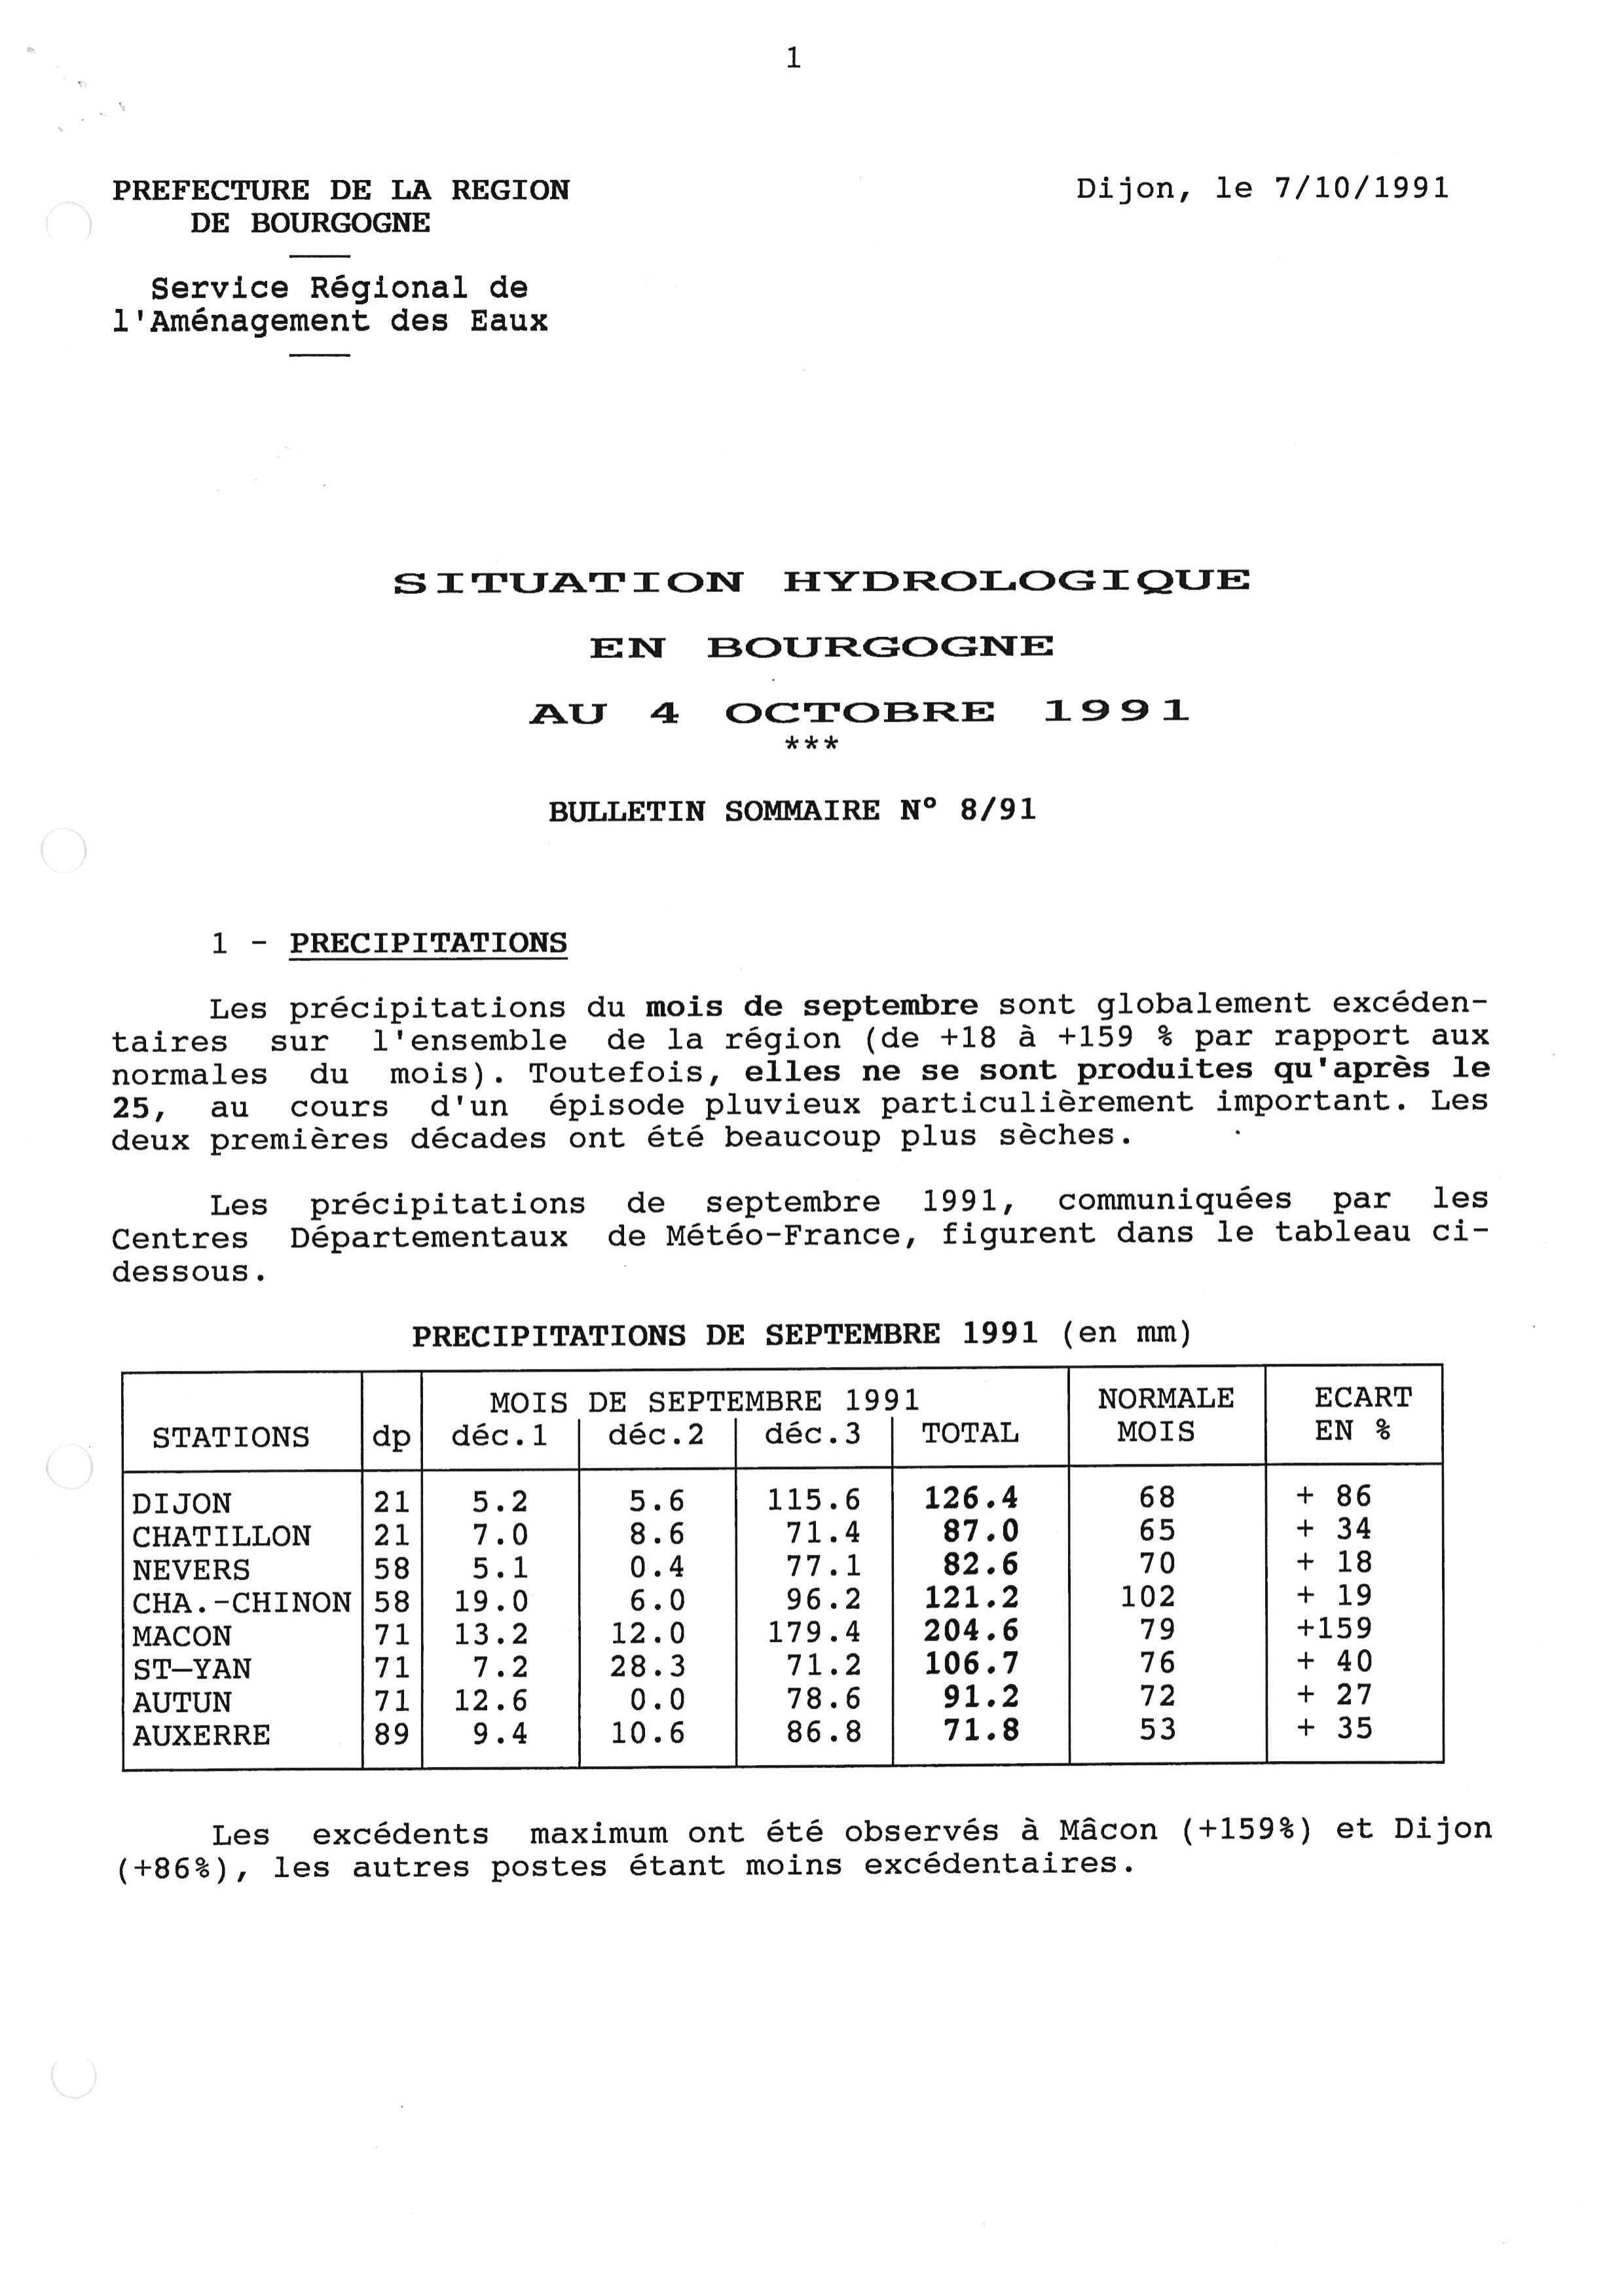 Bulletin hydrologique du mois de septembre 1991